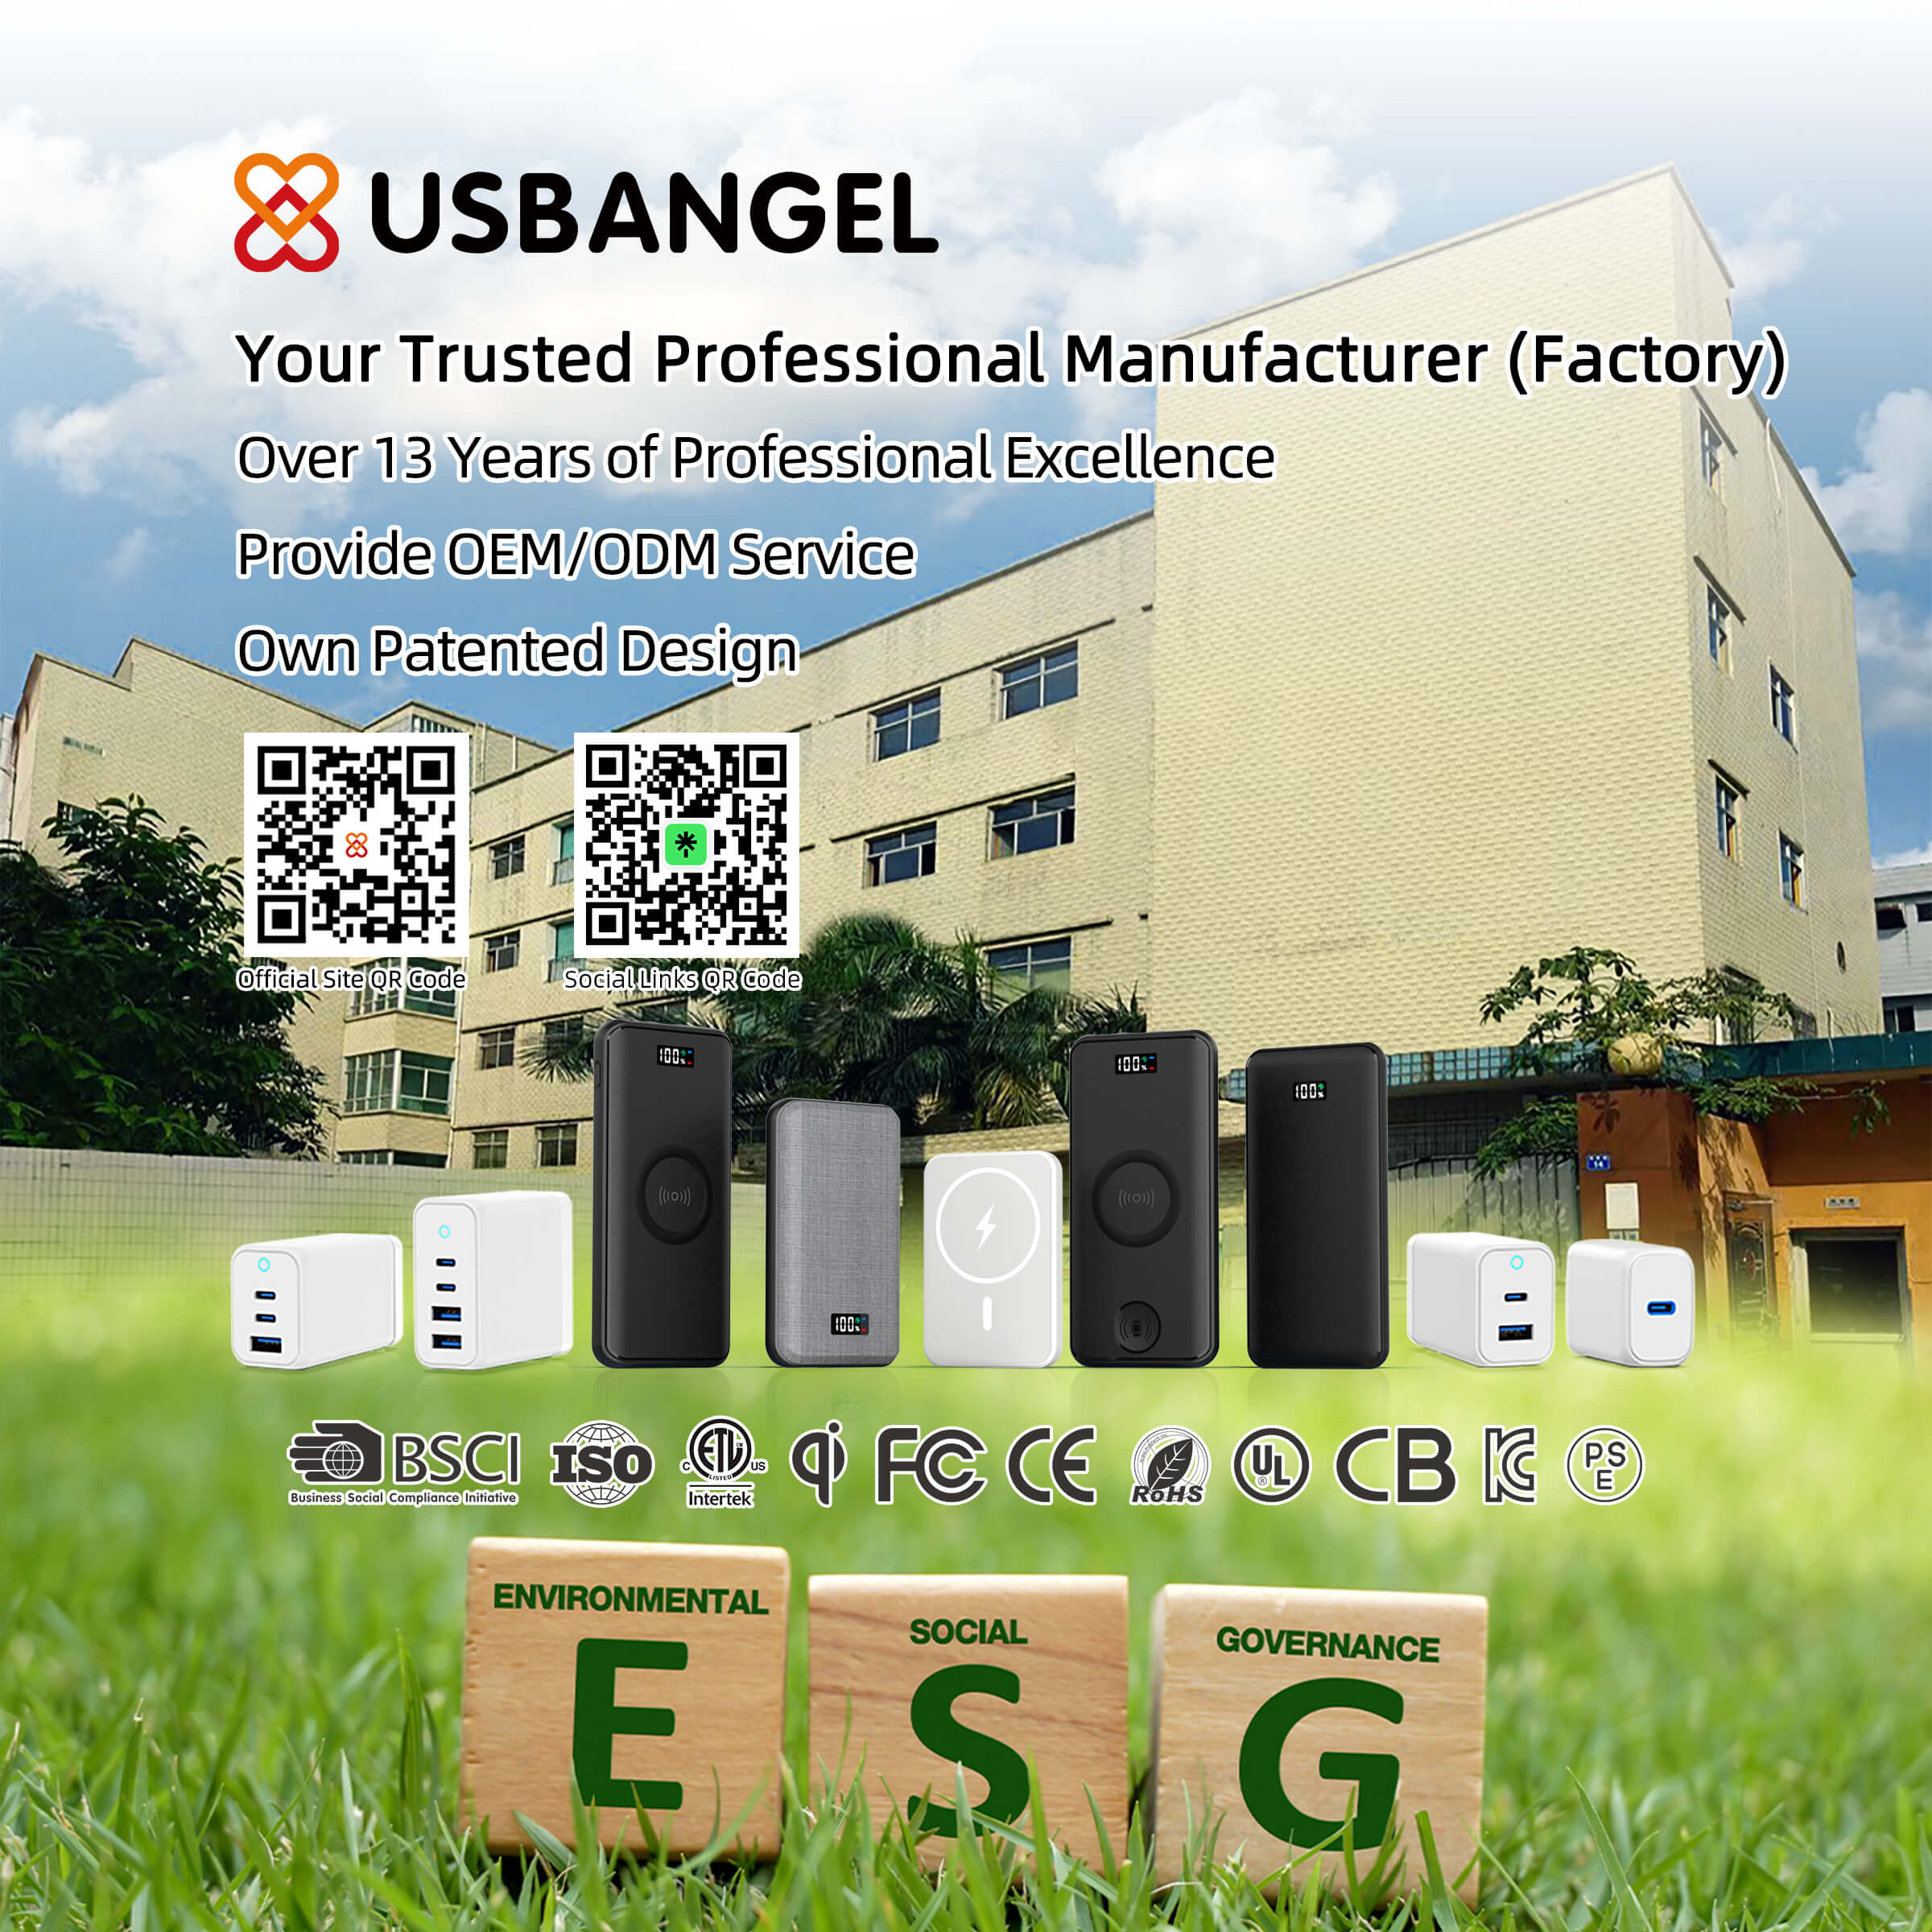 USBAngel - Verified Custom Manufacturer, Your trusted manufacturing partner